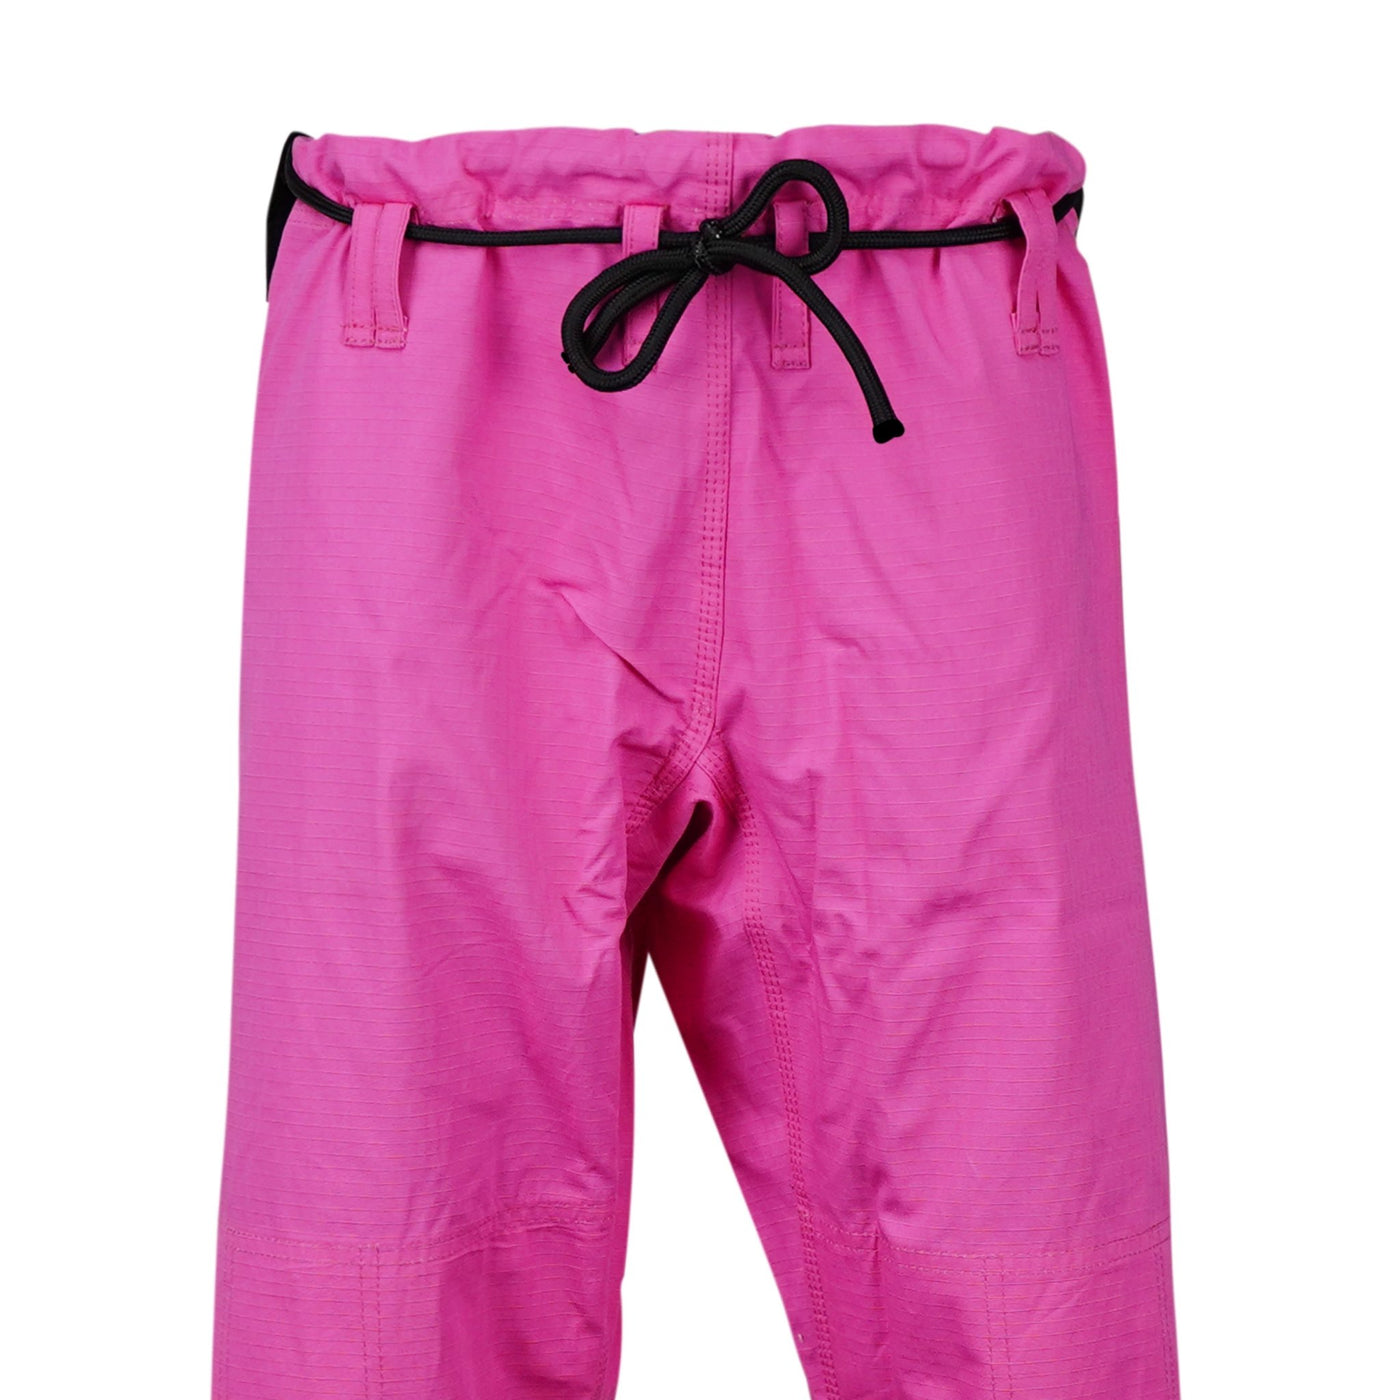 Plain Pink Brazilian Jiu Jitsu Gi Pants - Summo Sports